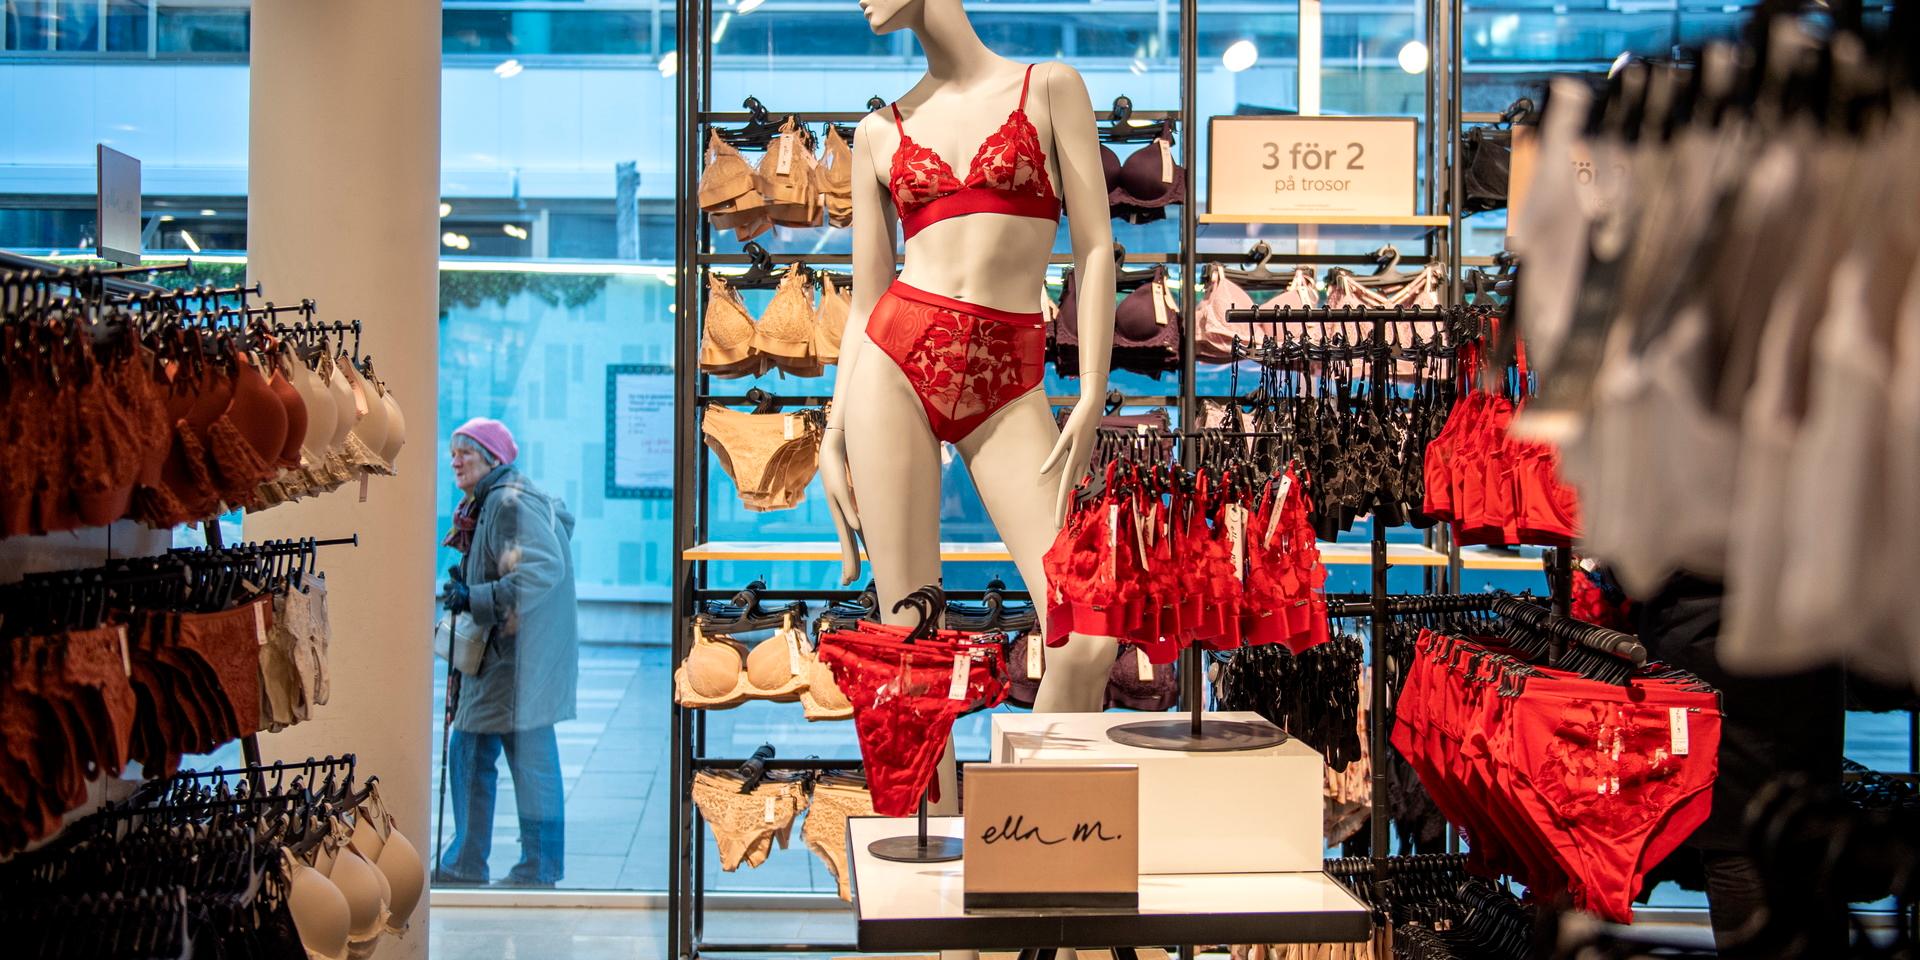 Med eller utan bygel, till jul är det många som vill ha röda underkläder, berättar Åsa Klingsell, ställföreträdande butikschef i en Lindexbutik.